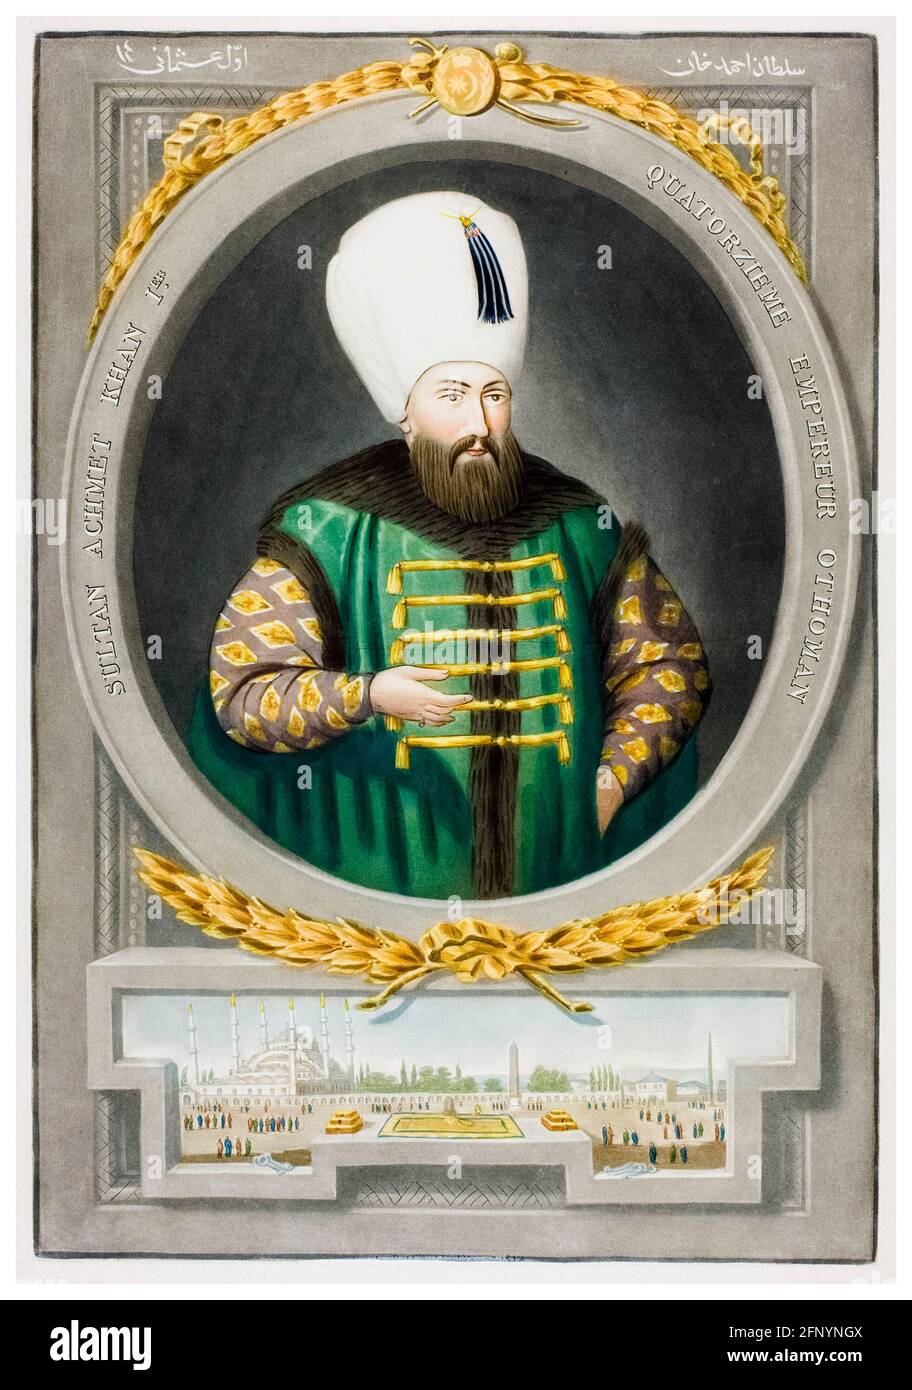 Ahmed I de Turquie (1590-1617), 14e sultan de l'Empire ottoman (1603-1617), portrait gravé par John Young, 1815 Banque D'Images